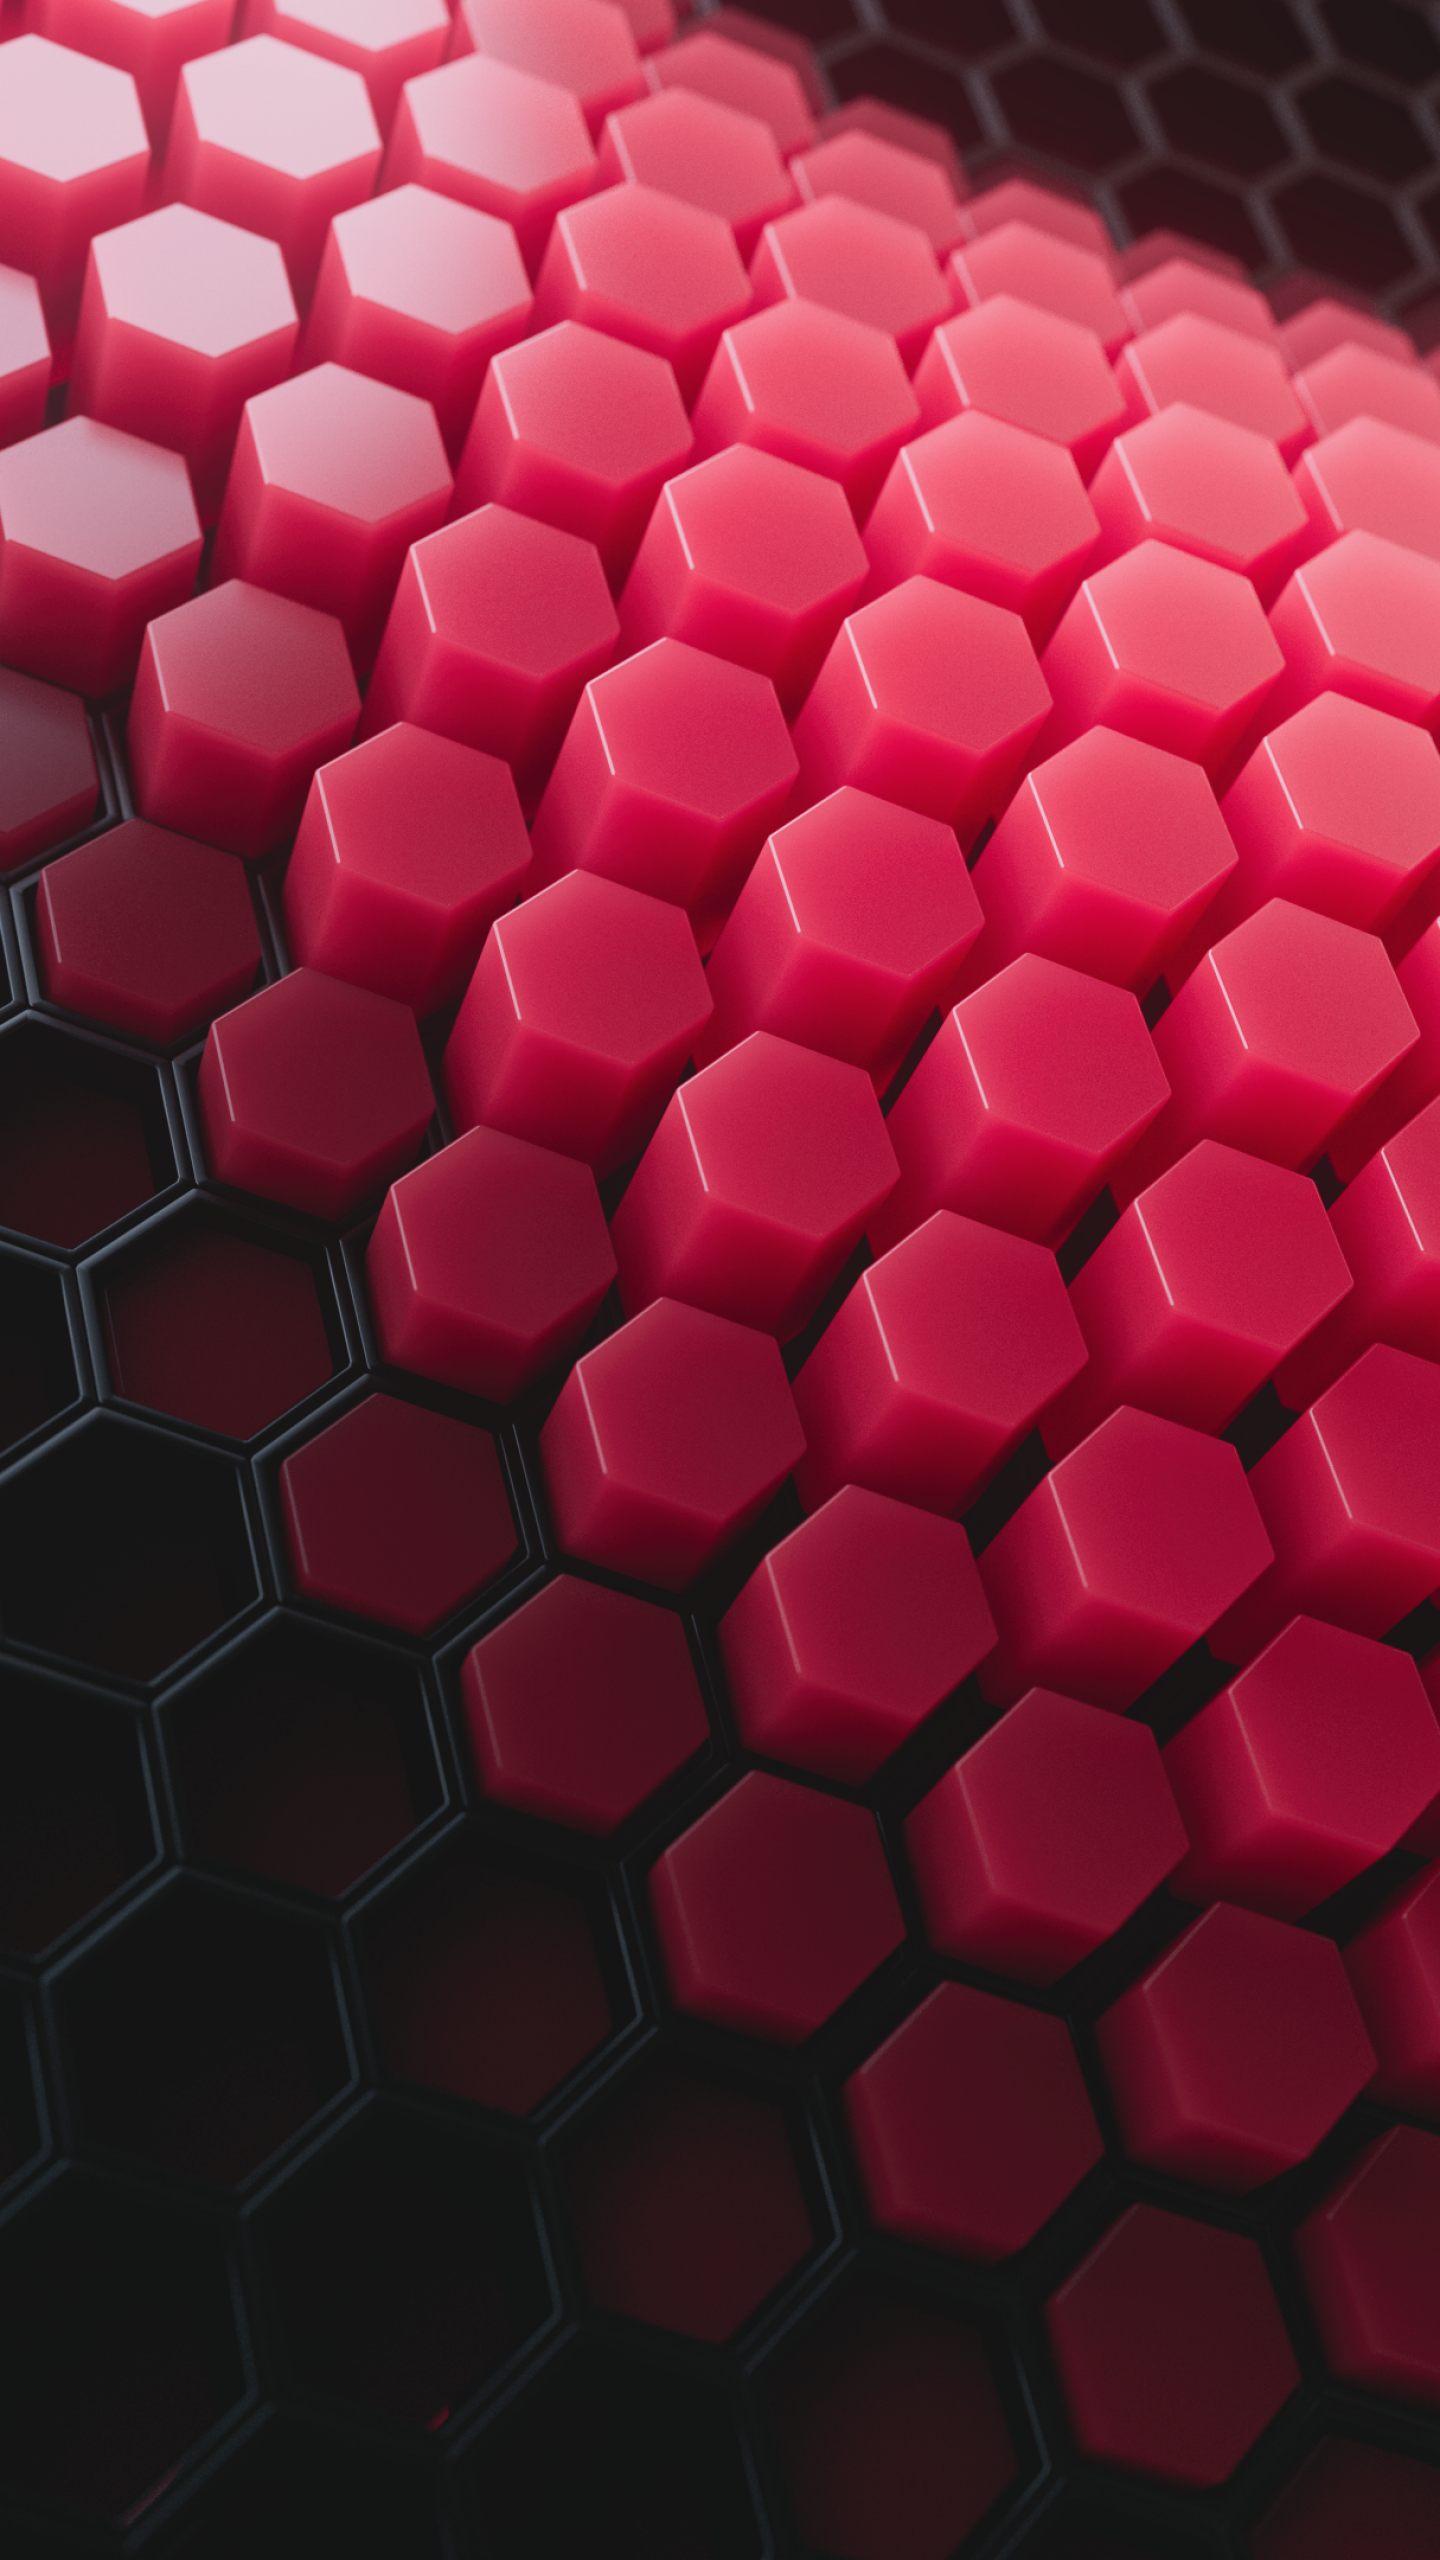 Hexagons Wallpaper 4K, Patterns, Abstract, #2276